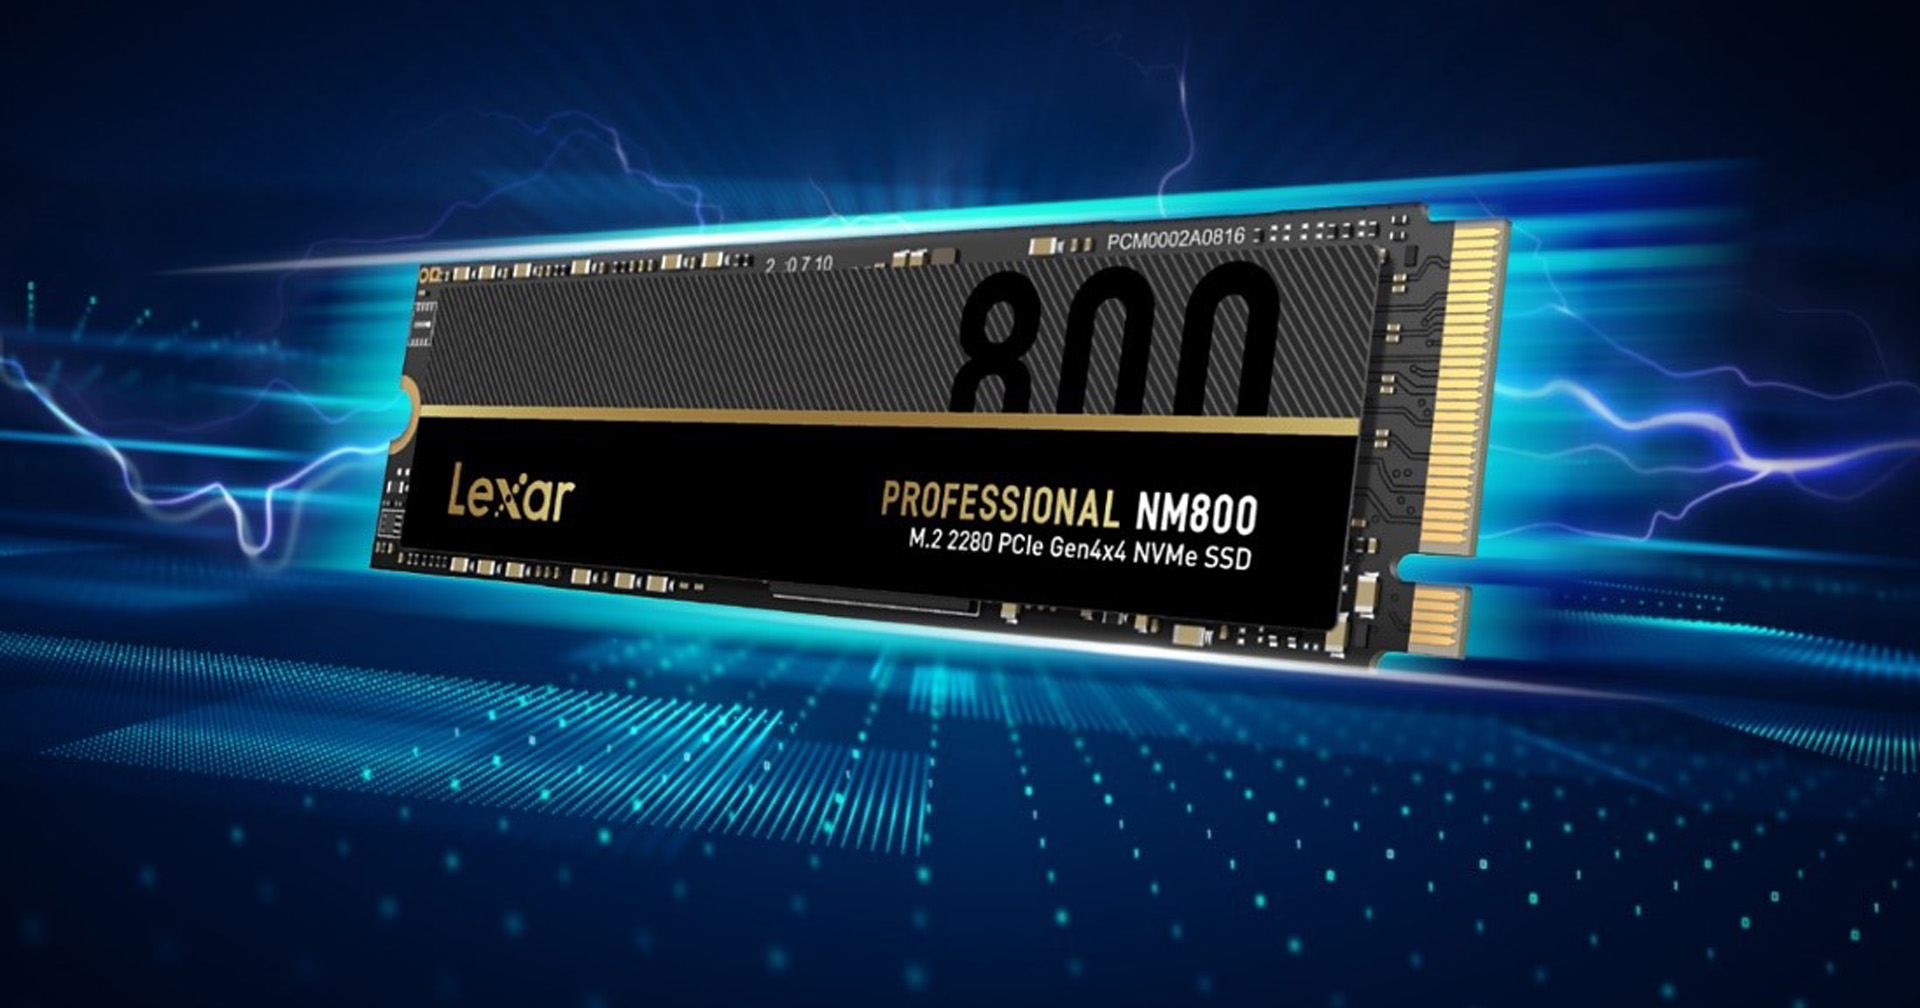 เปิดตัวอุปกรณ์เก็บข้อมูลระดับมืออาชีพ Lexar Professional NM800 M.2 2280 PCIe Gen4x4 NVMe SSD